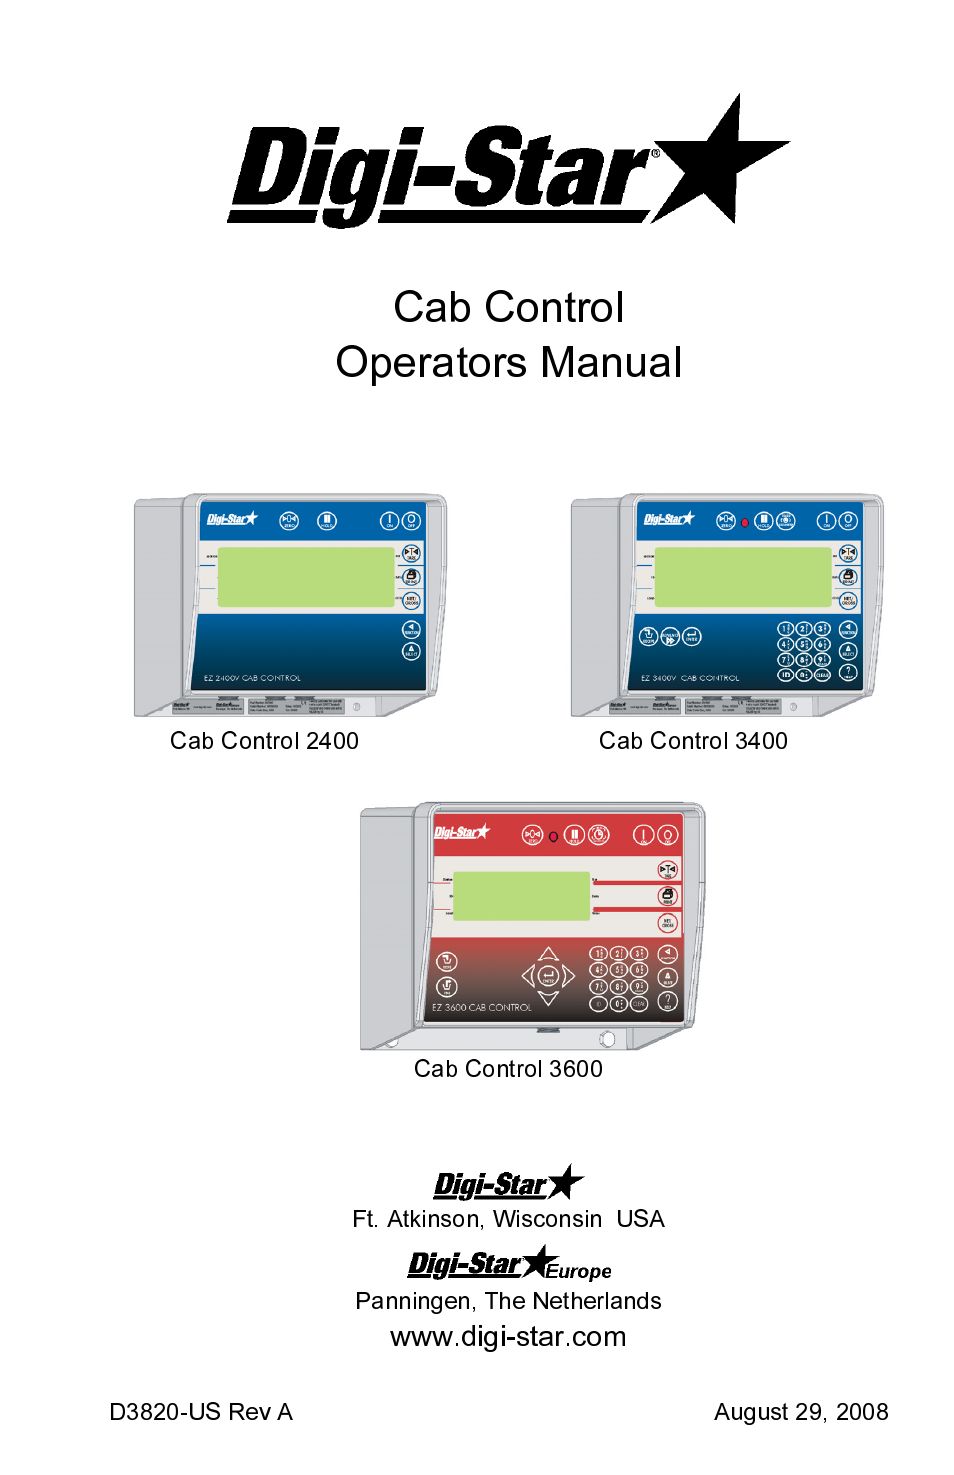 Cab Control 3400